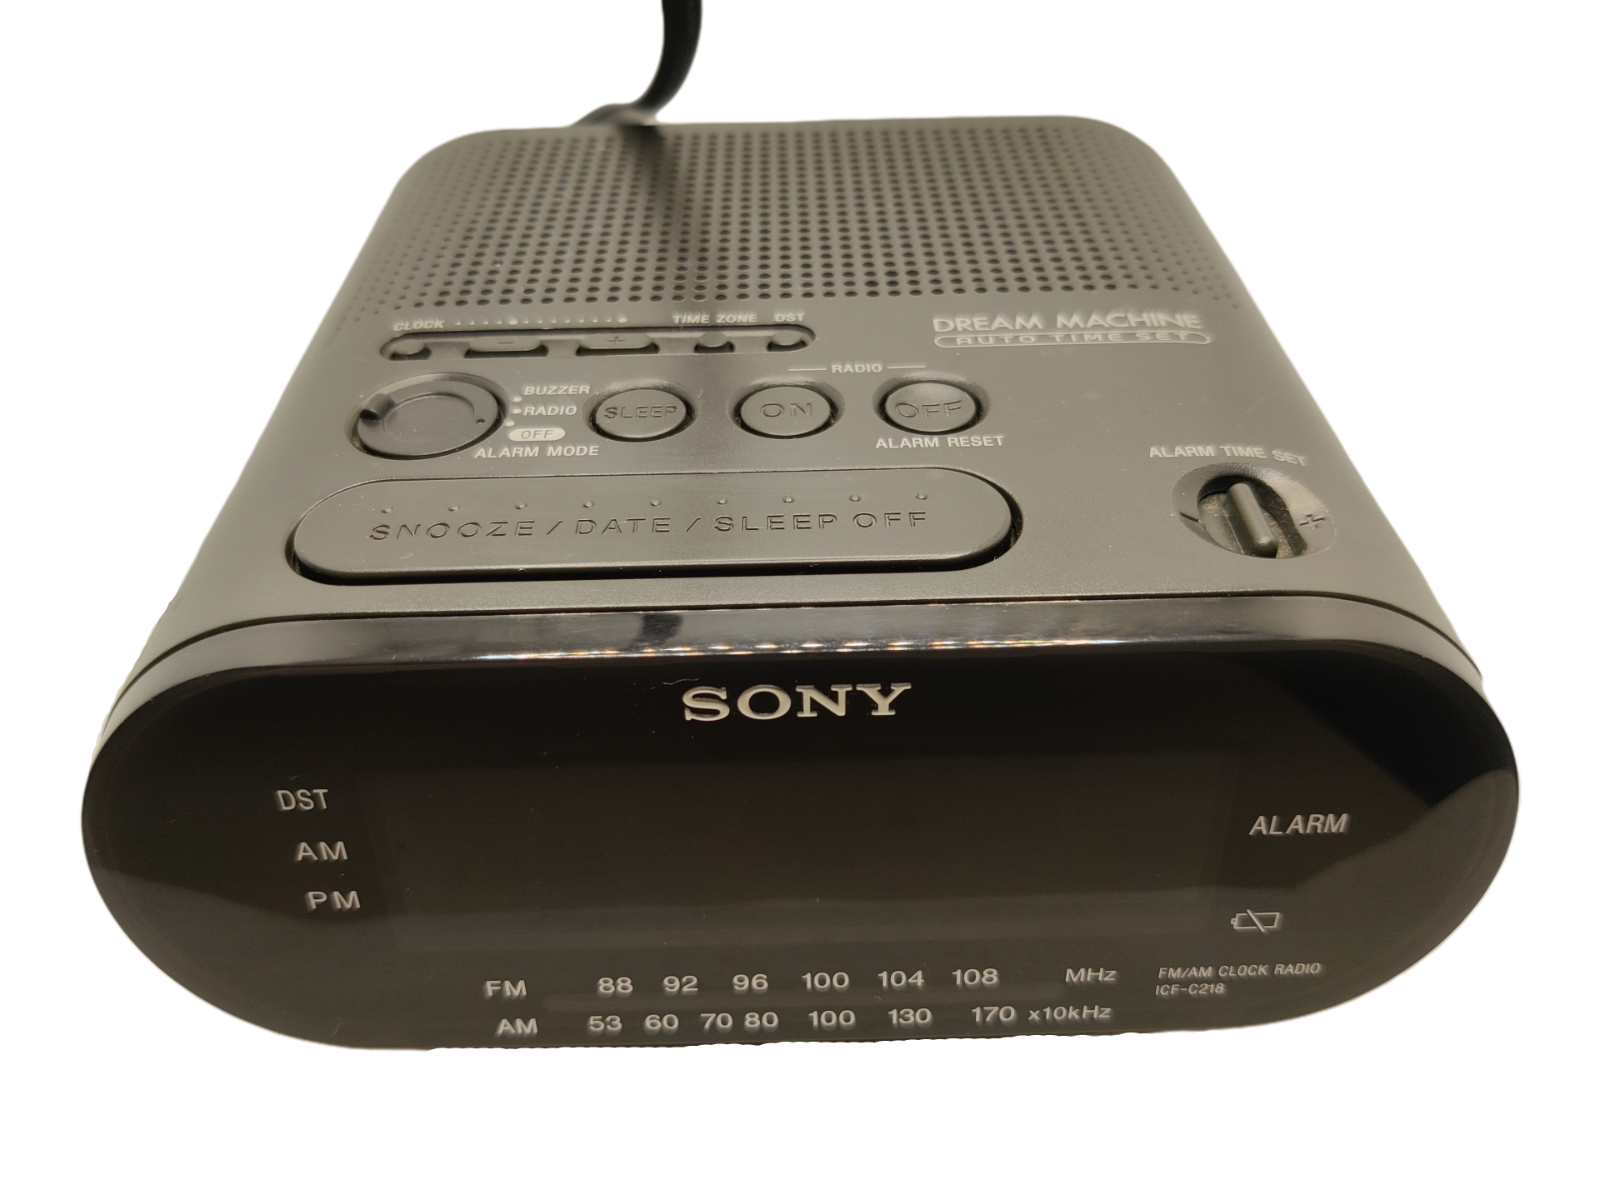 Sony Dream Machine Am Fm Alarm Clock Radio Model Icf C218 Tested